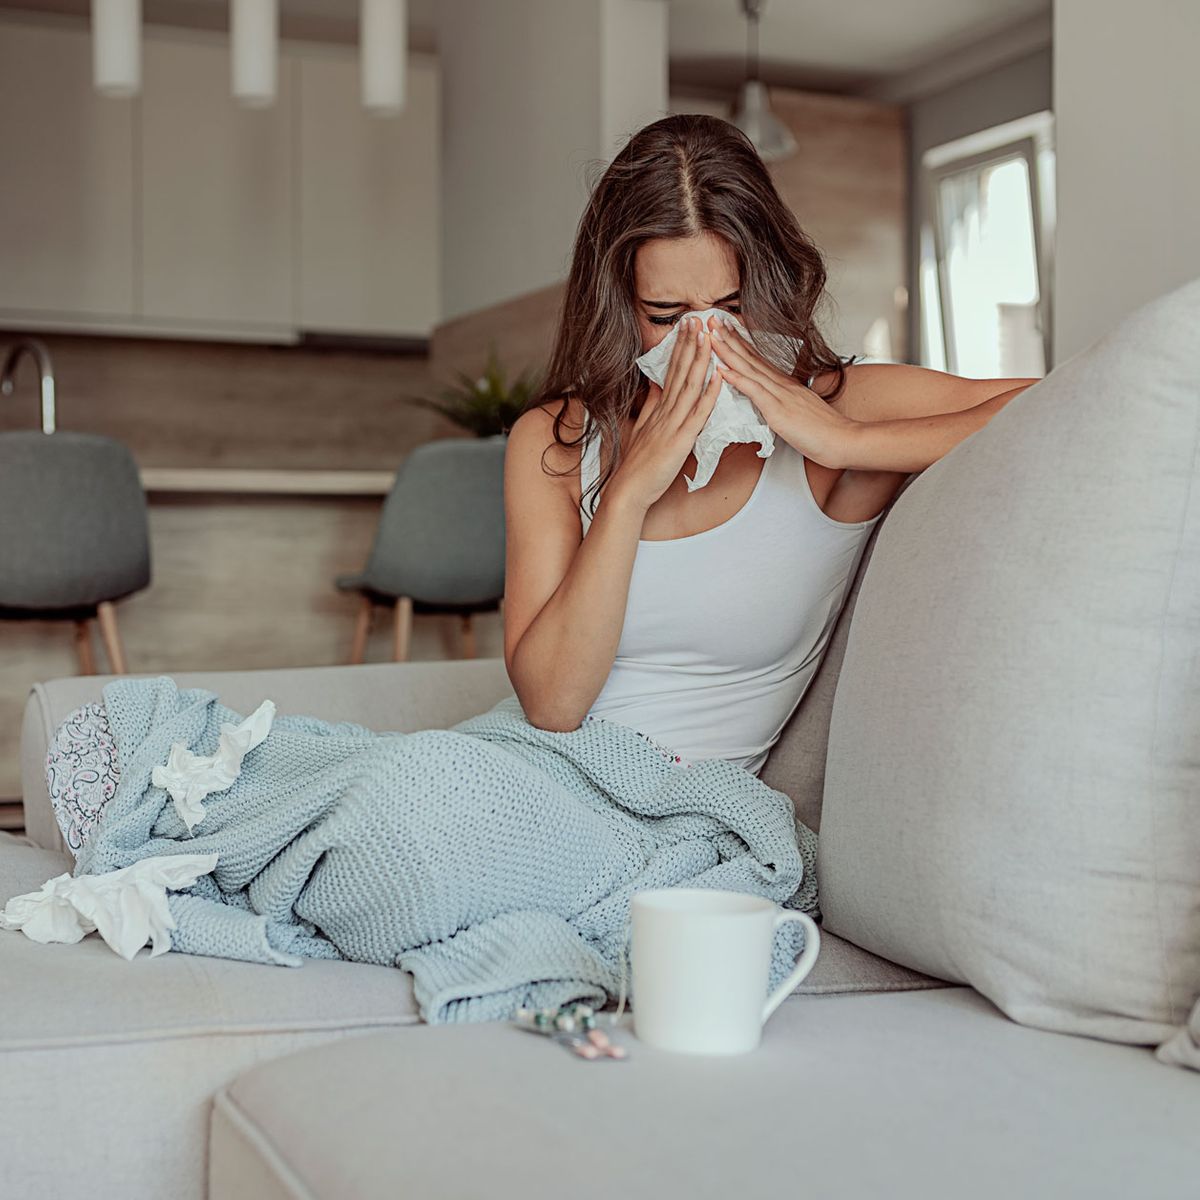 Grippe-Hausmittel: Diese simplen Mittel können die Symptome lindern